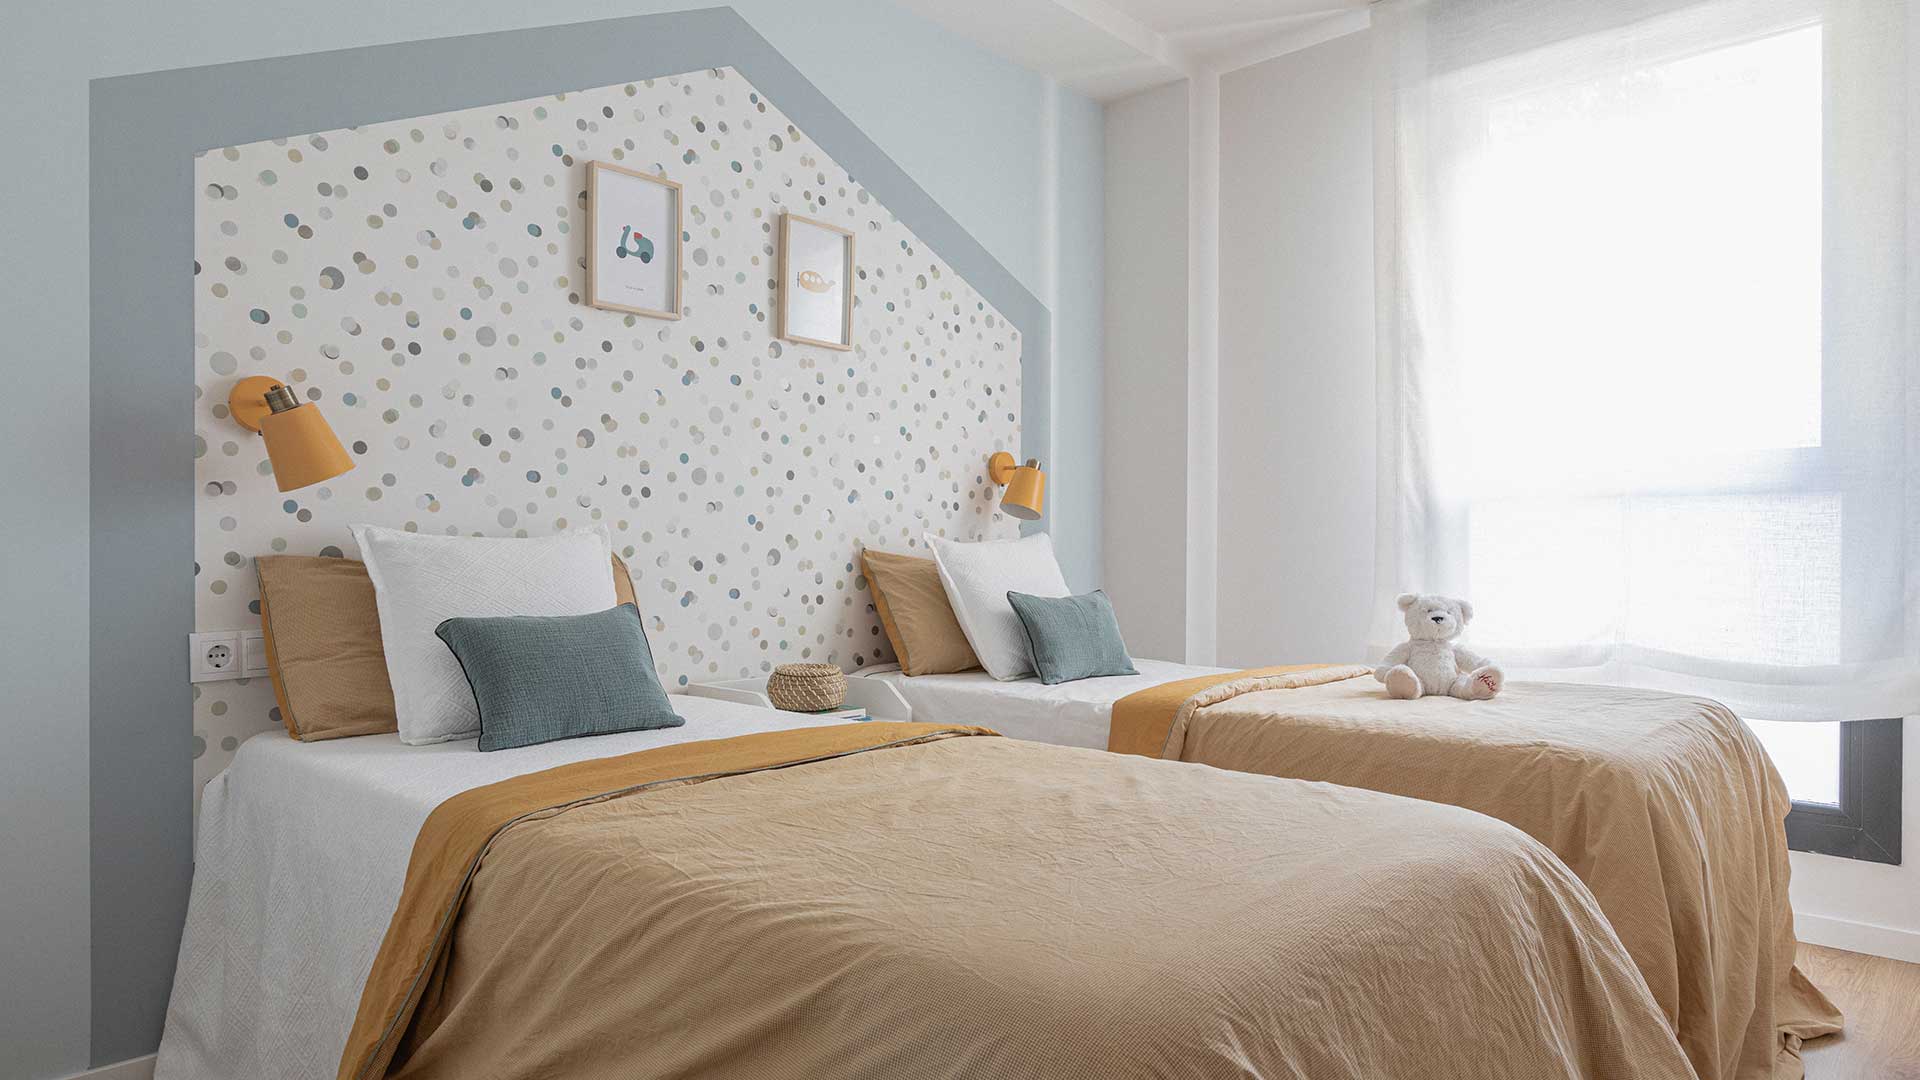 Dormitorio infantil con dos camas y papel pintado con forma de casita. Solo un instante para Moralima Studio.